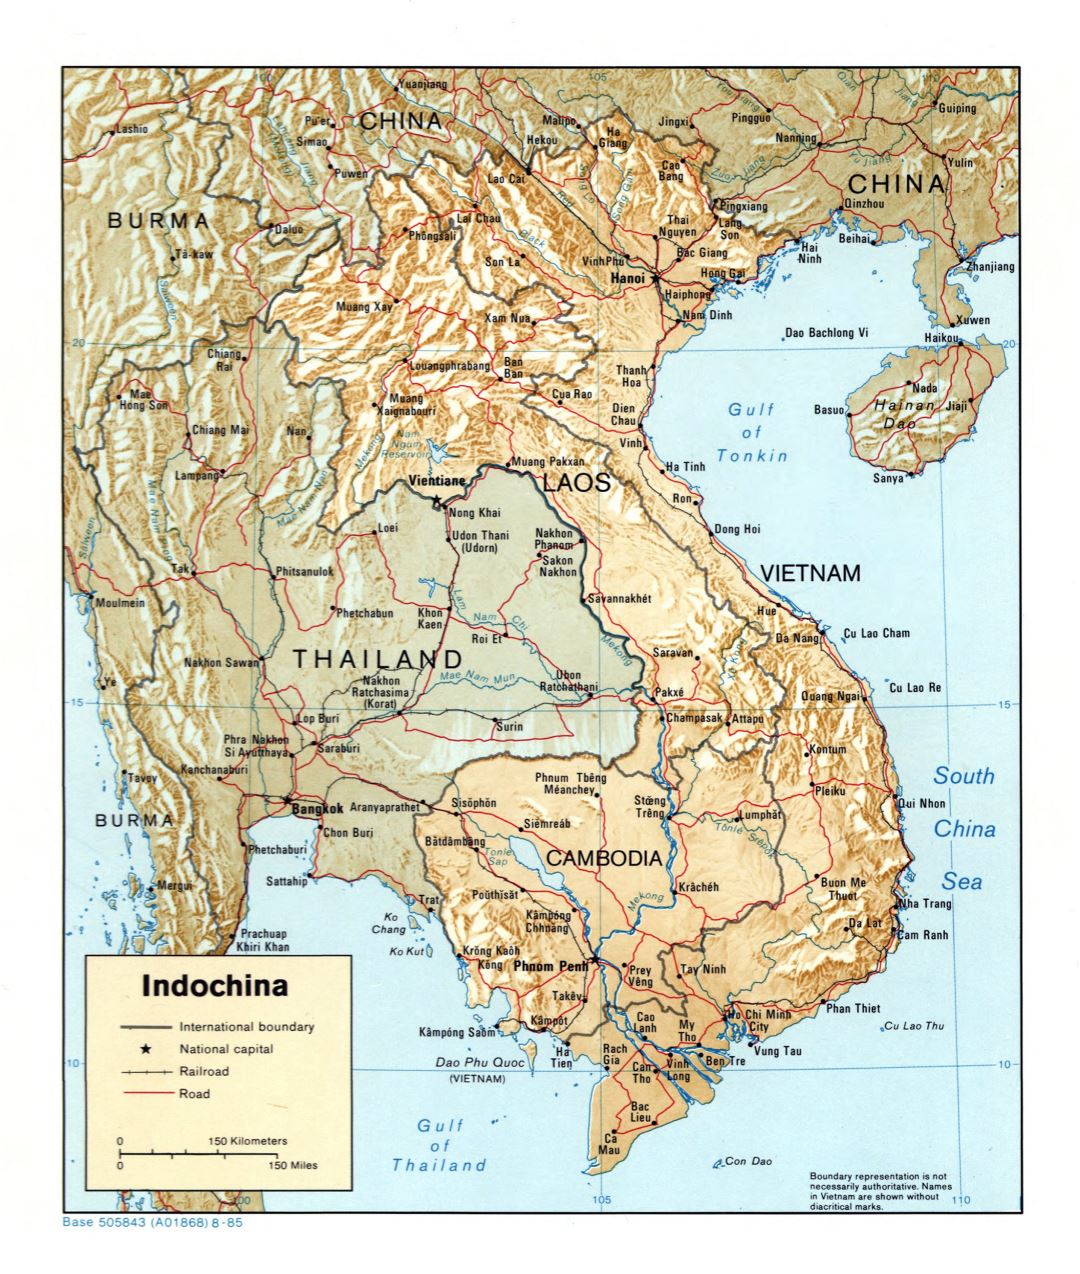 Grande detallado mapa político de Indochina con relieve, carreteras, ferrocarriles y principales ciudades - 1985